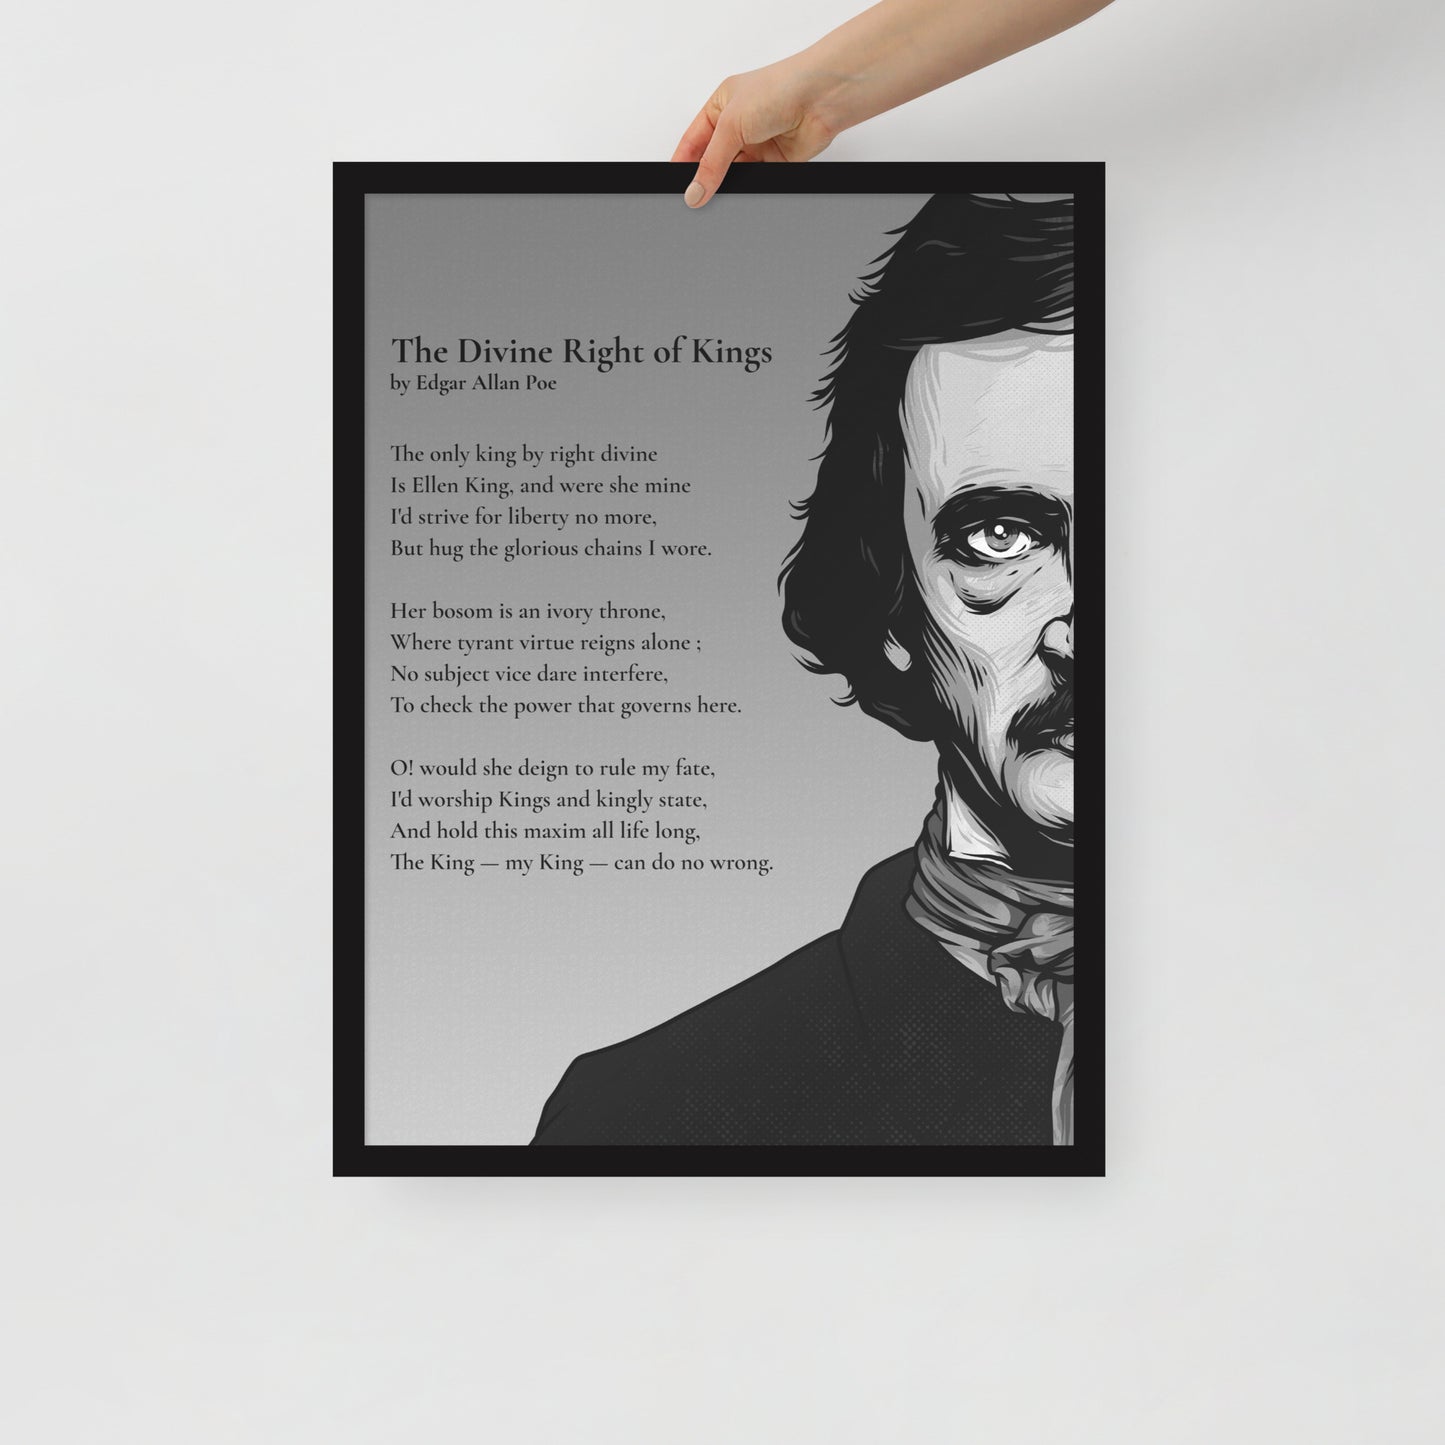 Edgar Allan Poe's 'The Divine Right of Kings' Framed Matted Poster - 18 x 24 Black Frame